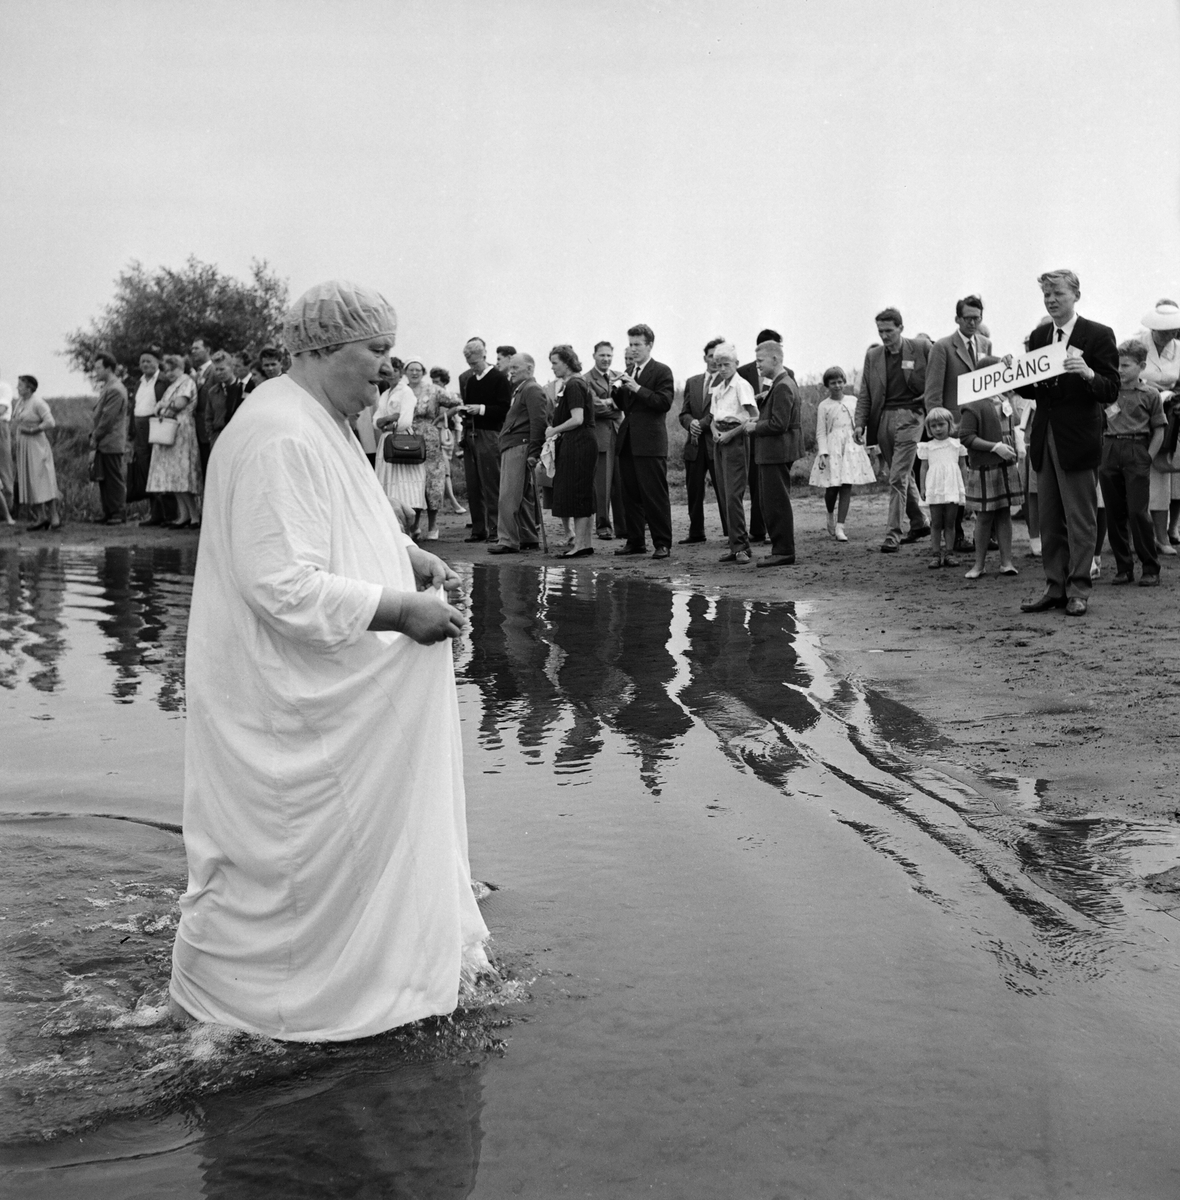 Dop av Jehovas Vittnen i sjön Roxen, Linköping, 1957.
Pressfotografier från 1950-1960-talet. Samtliga bilder är tagna i Östergötland, de flesta i Linköping.